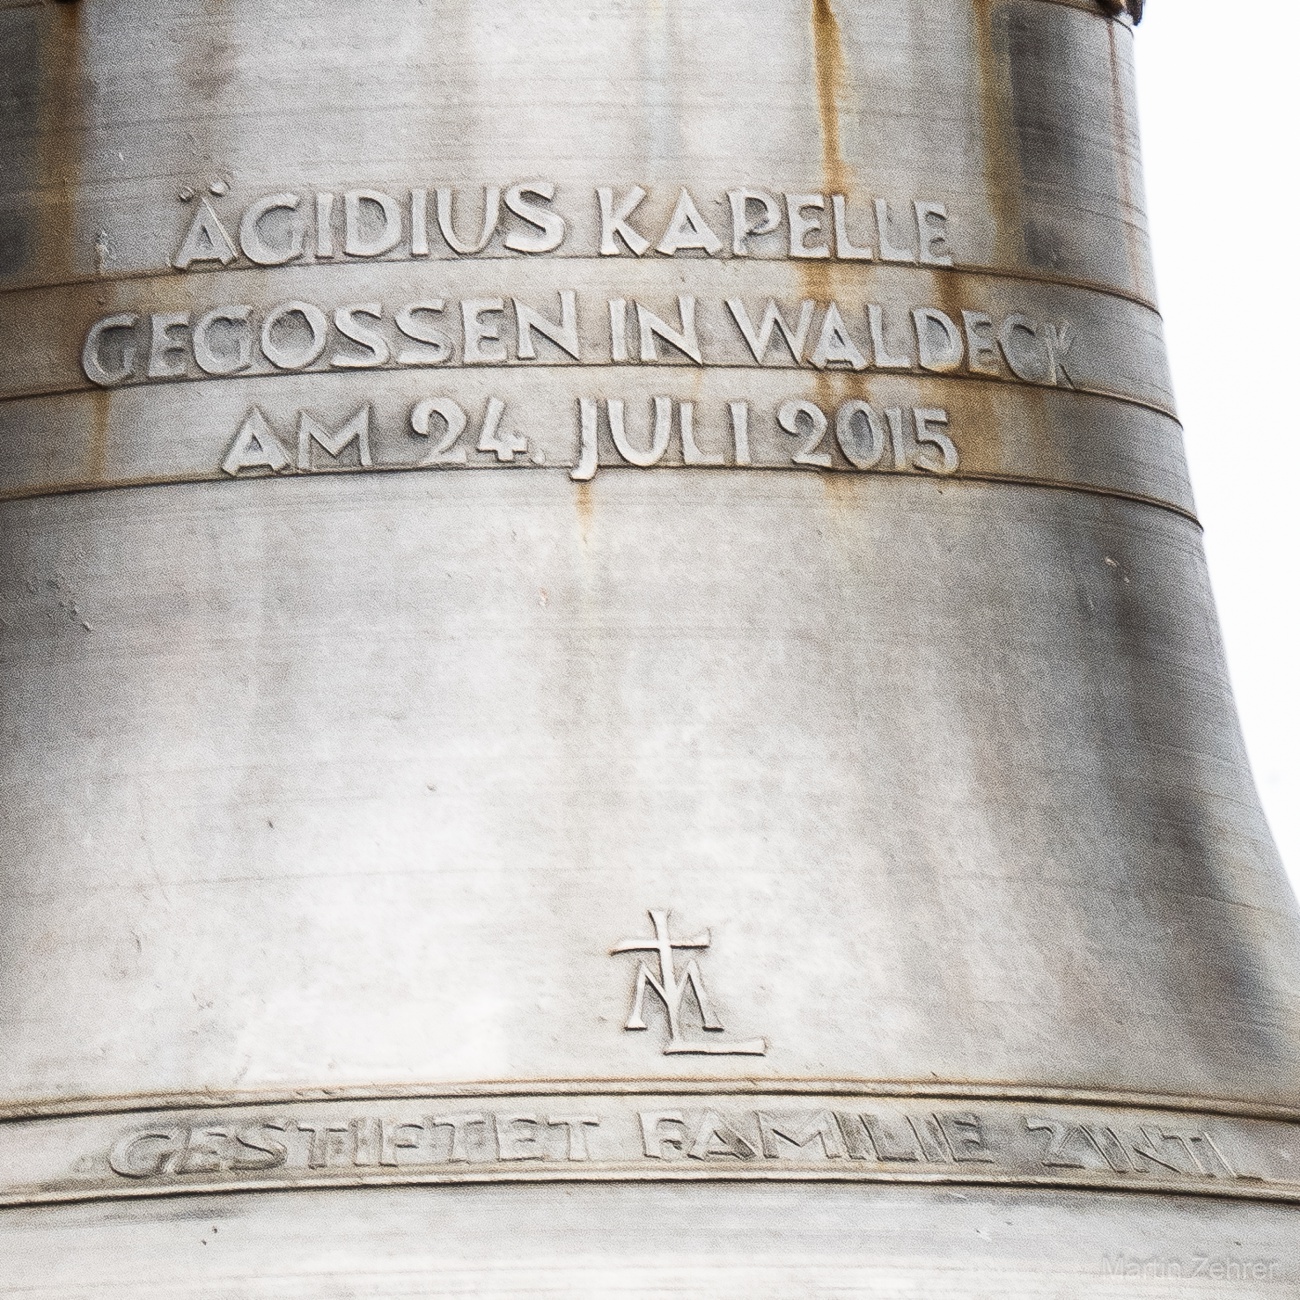 Foto: Martin Zehrer - Ägidius Kapelle, gegossen am 24. Juli 2015 in Waldeck...<br />
<br />
So steht es auf dieser Glocke, oben auf dem Schlossberg, geschrieben! 